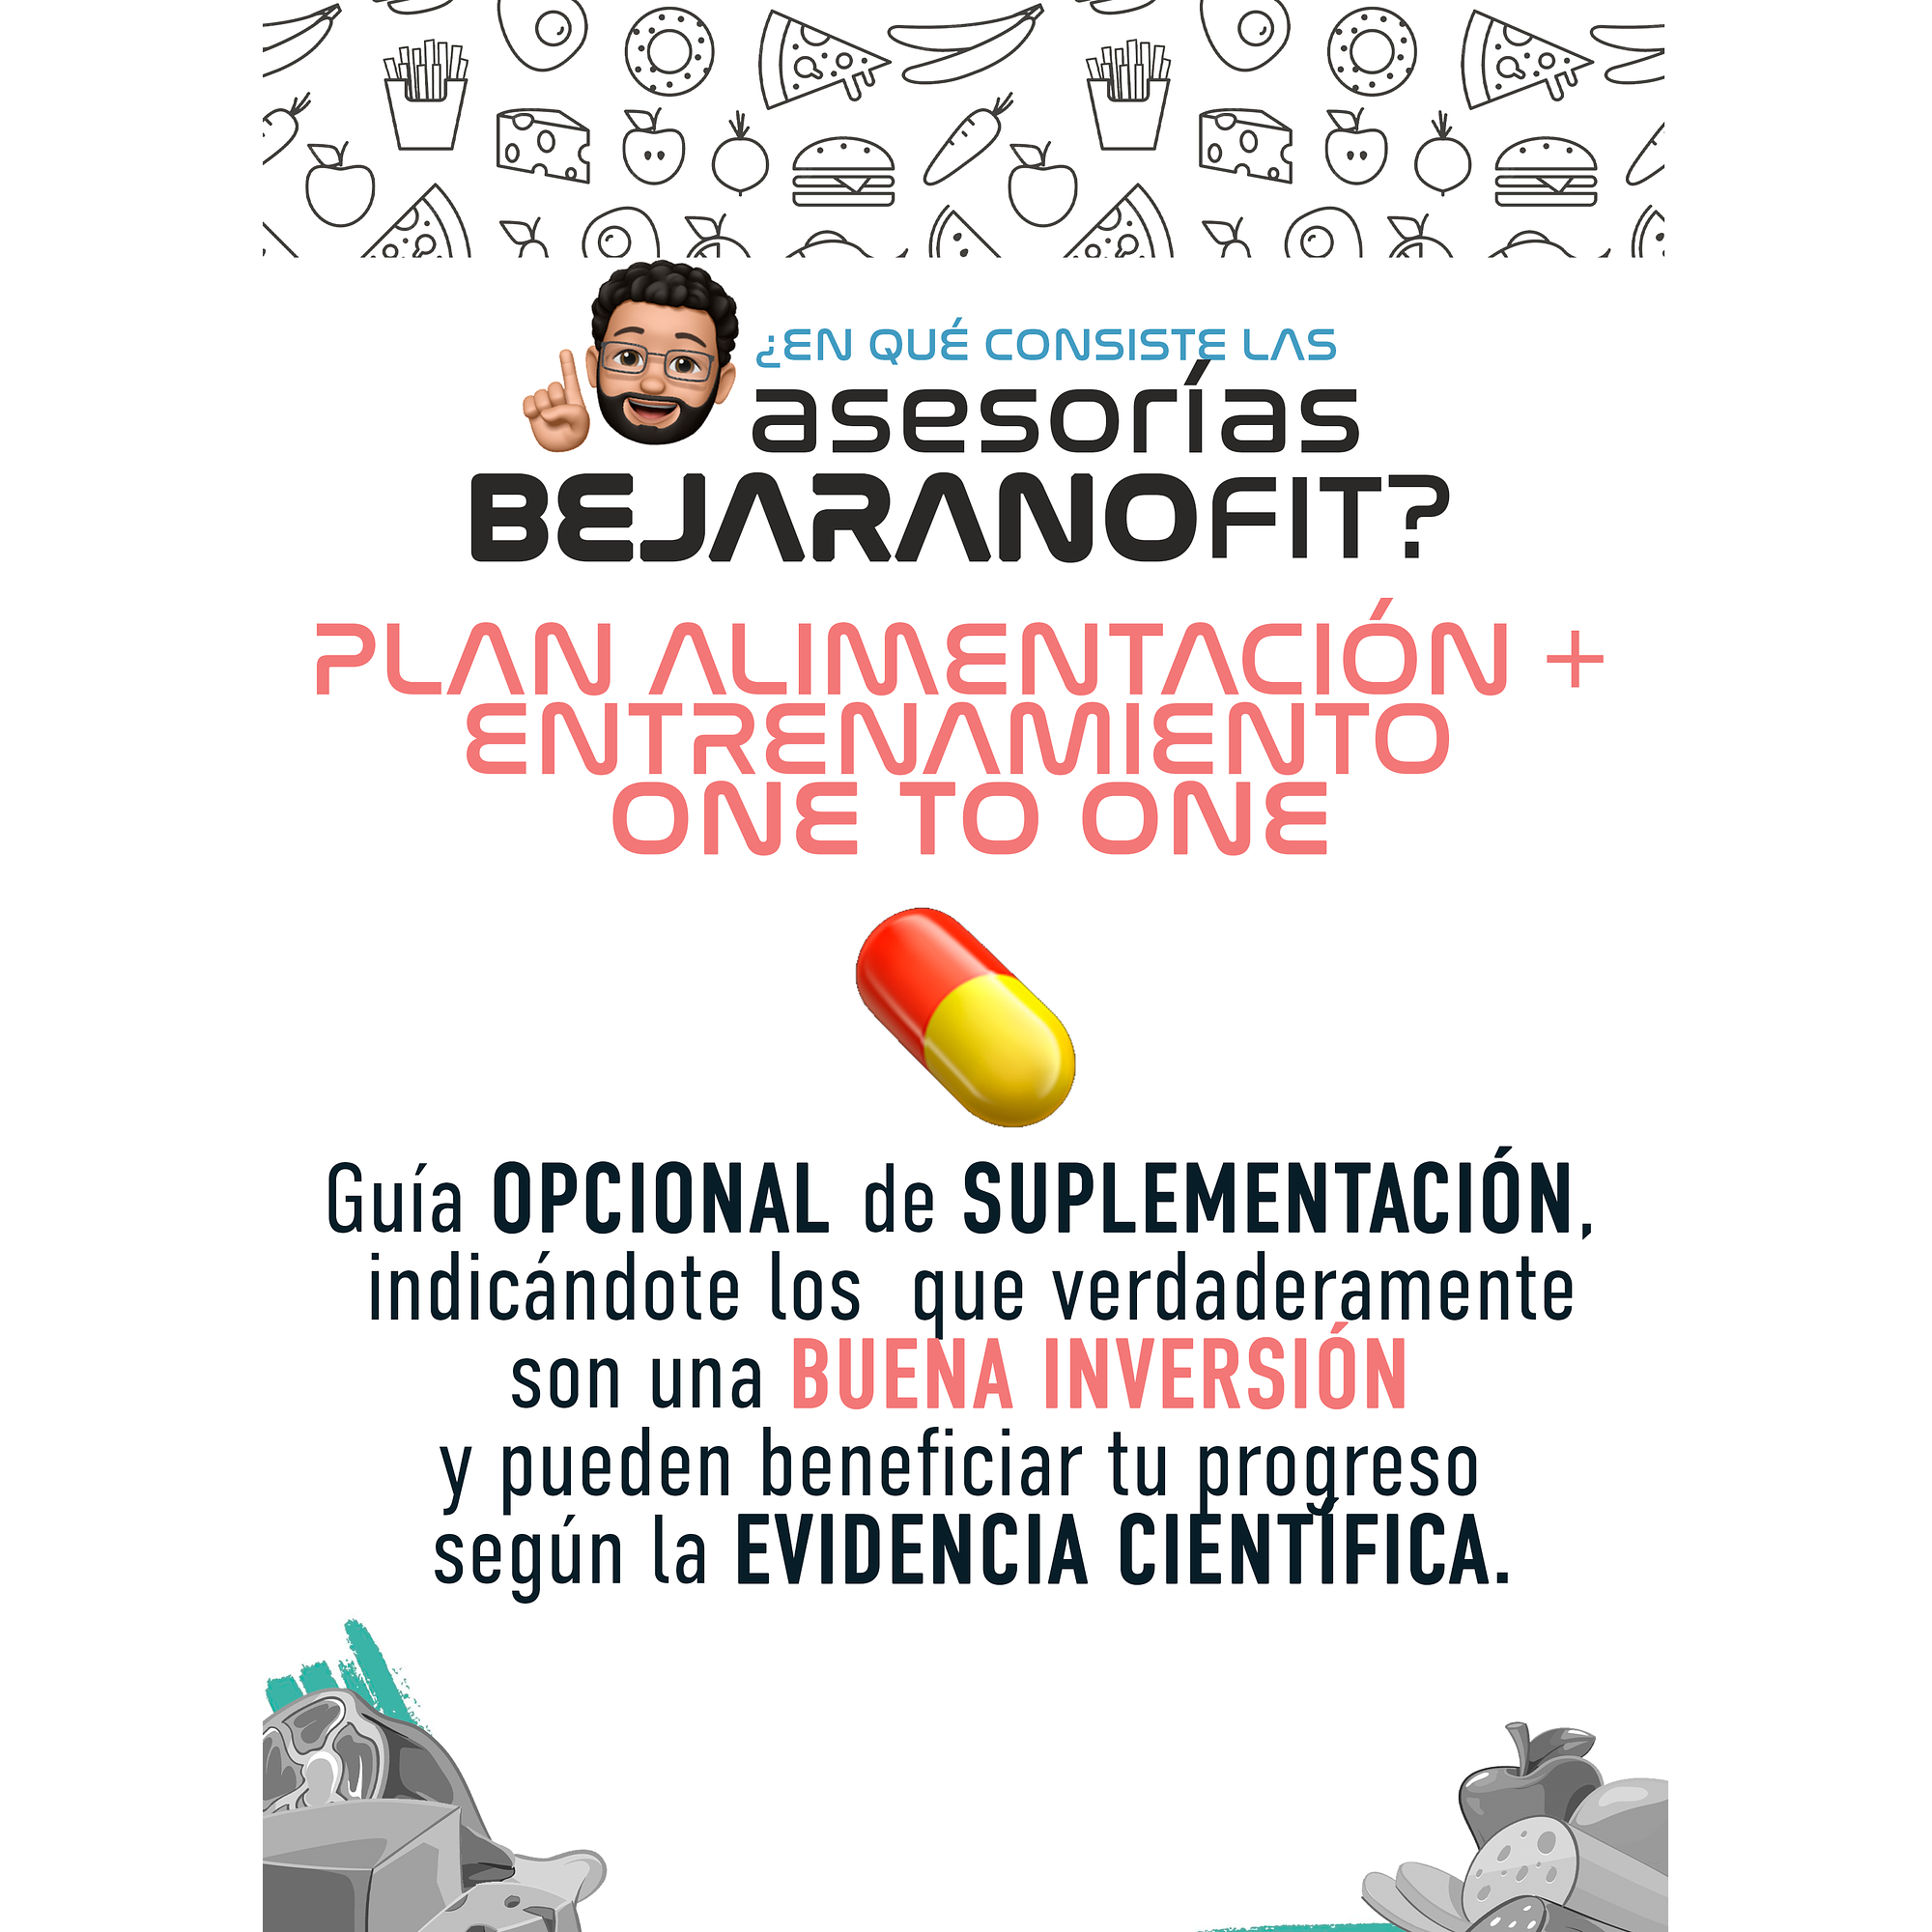 Plan ONE TO ONE de Entrenamiento + Nutrición - Image 4